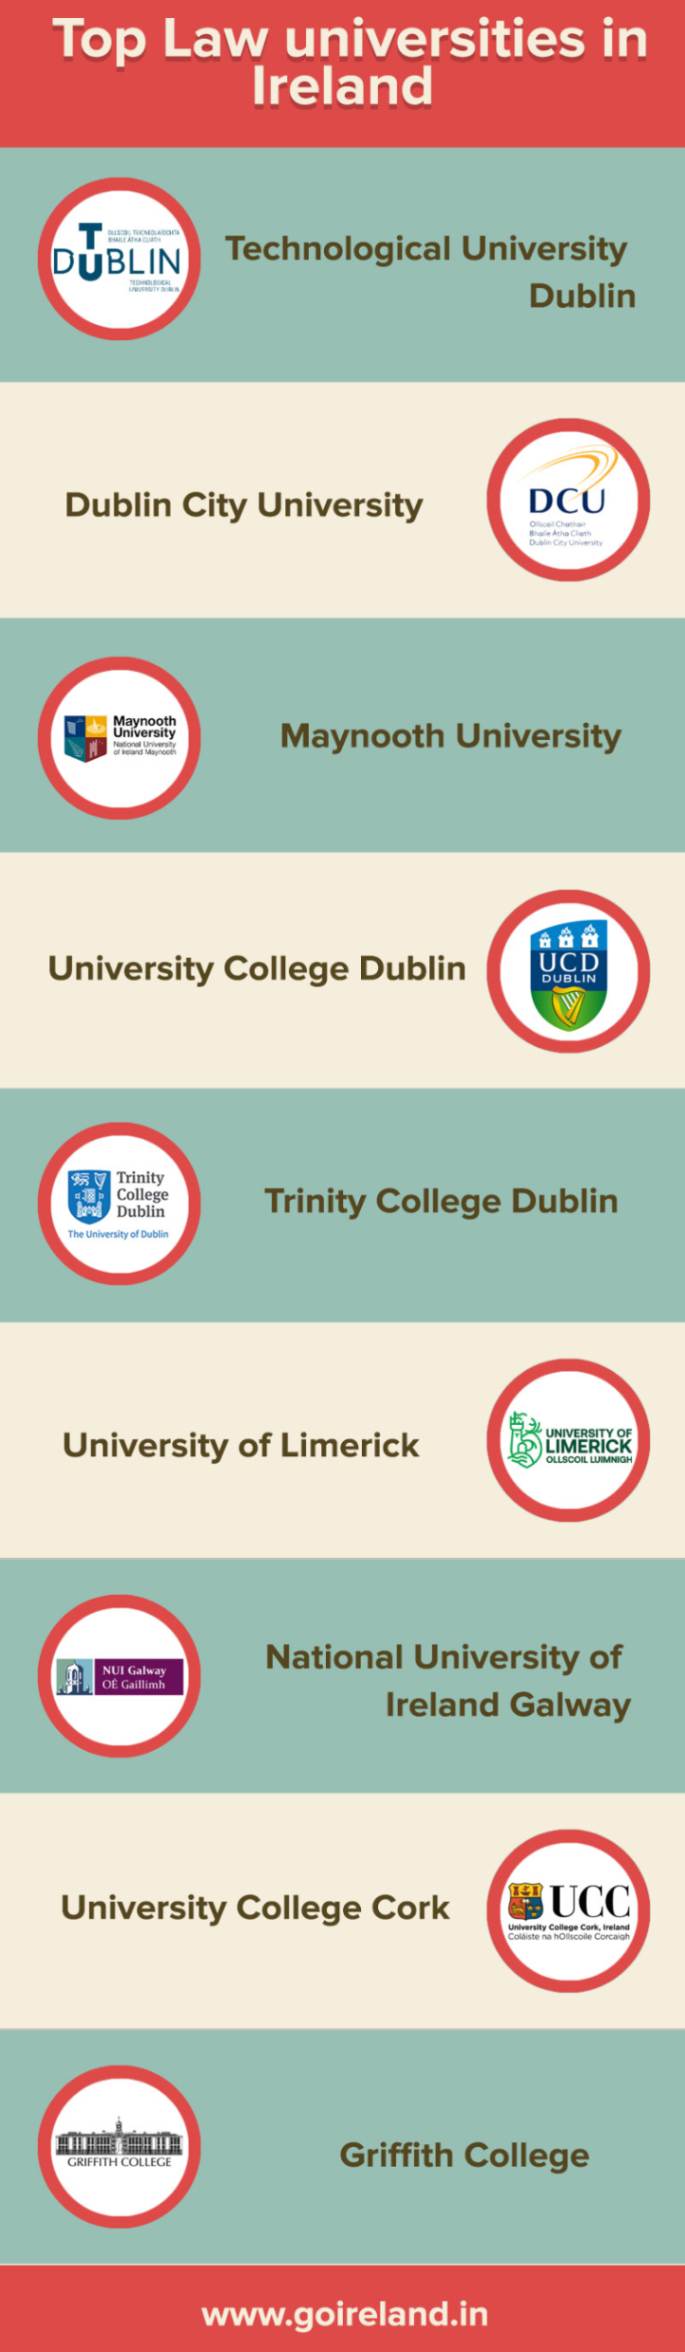 Top Law Universities in Ireland